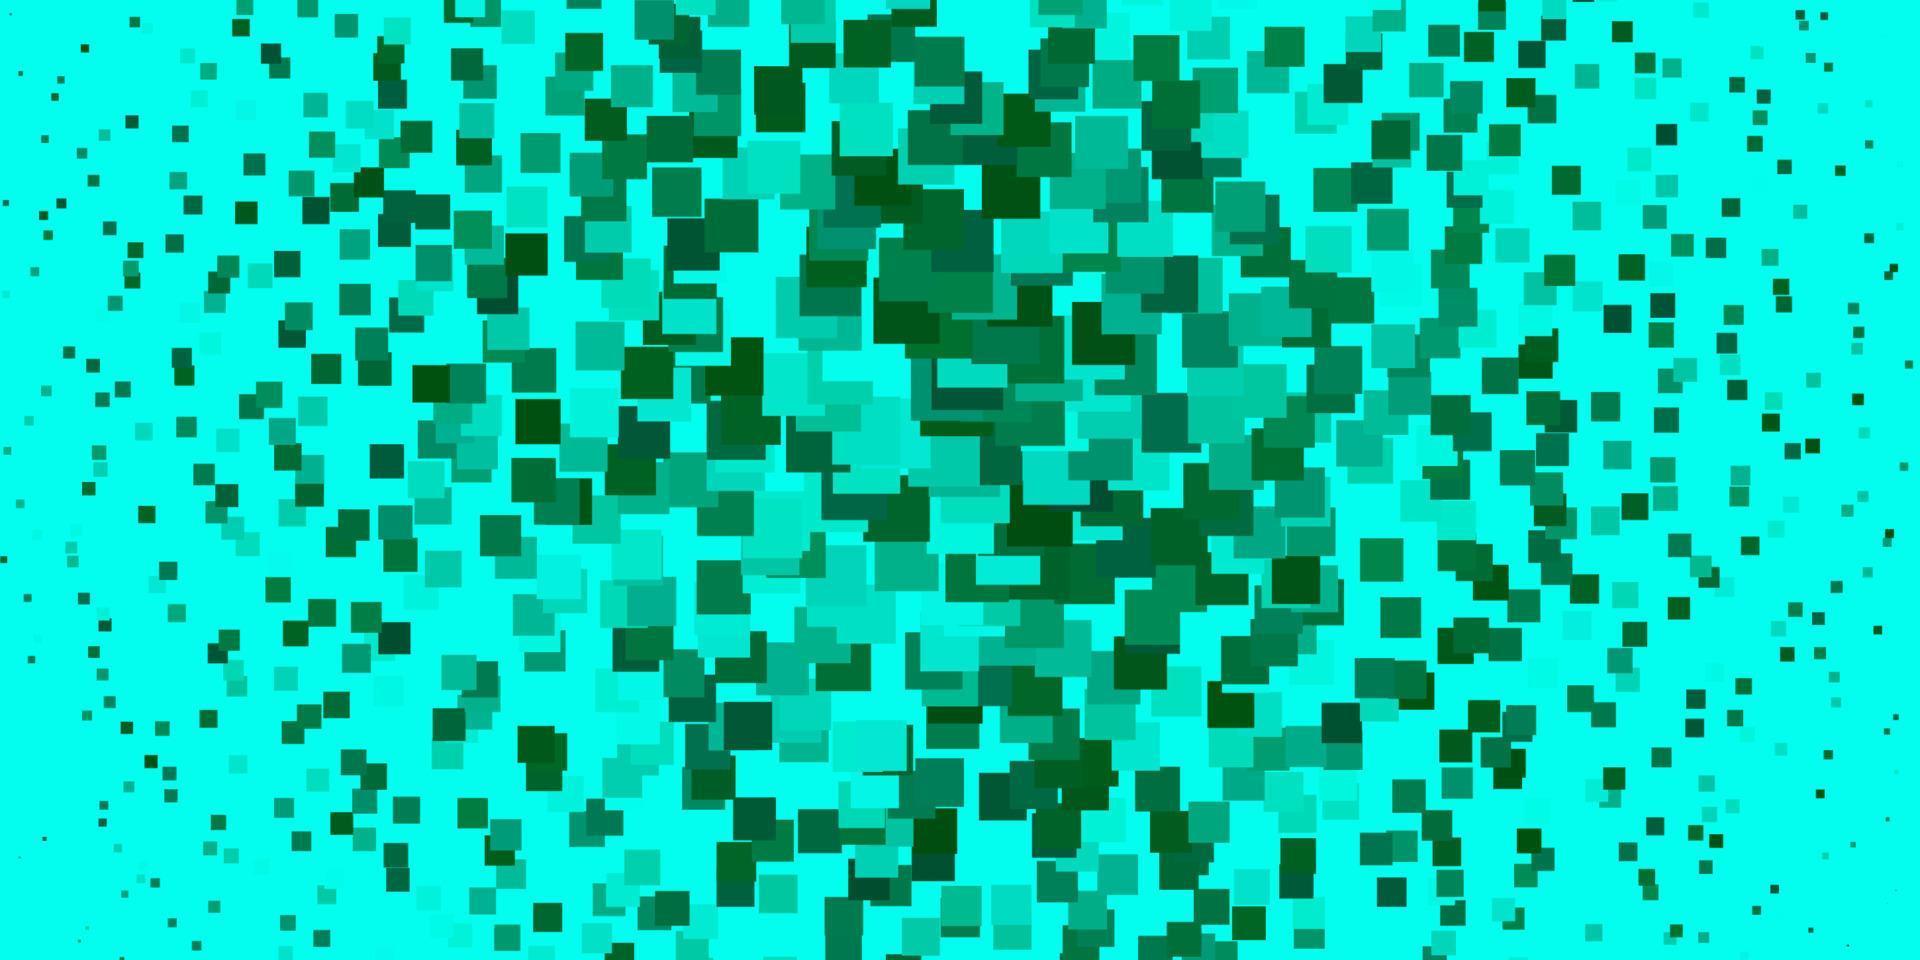 sfondo vettoriale verde chiaro in stile poligonale.